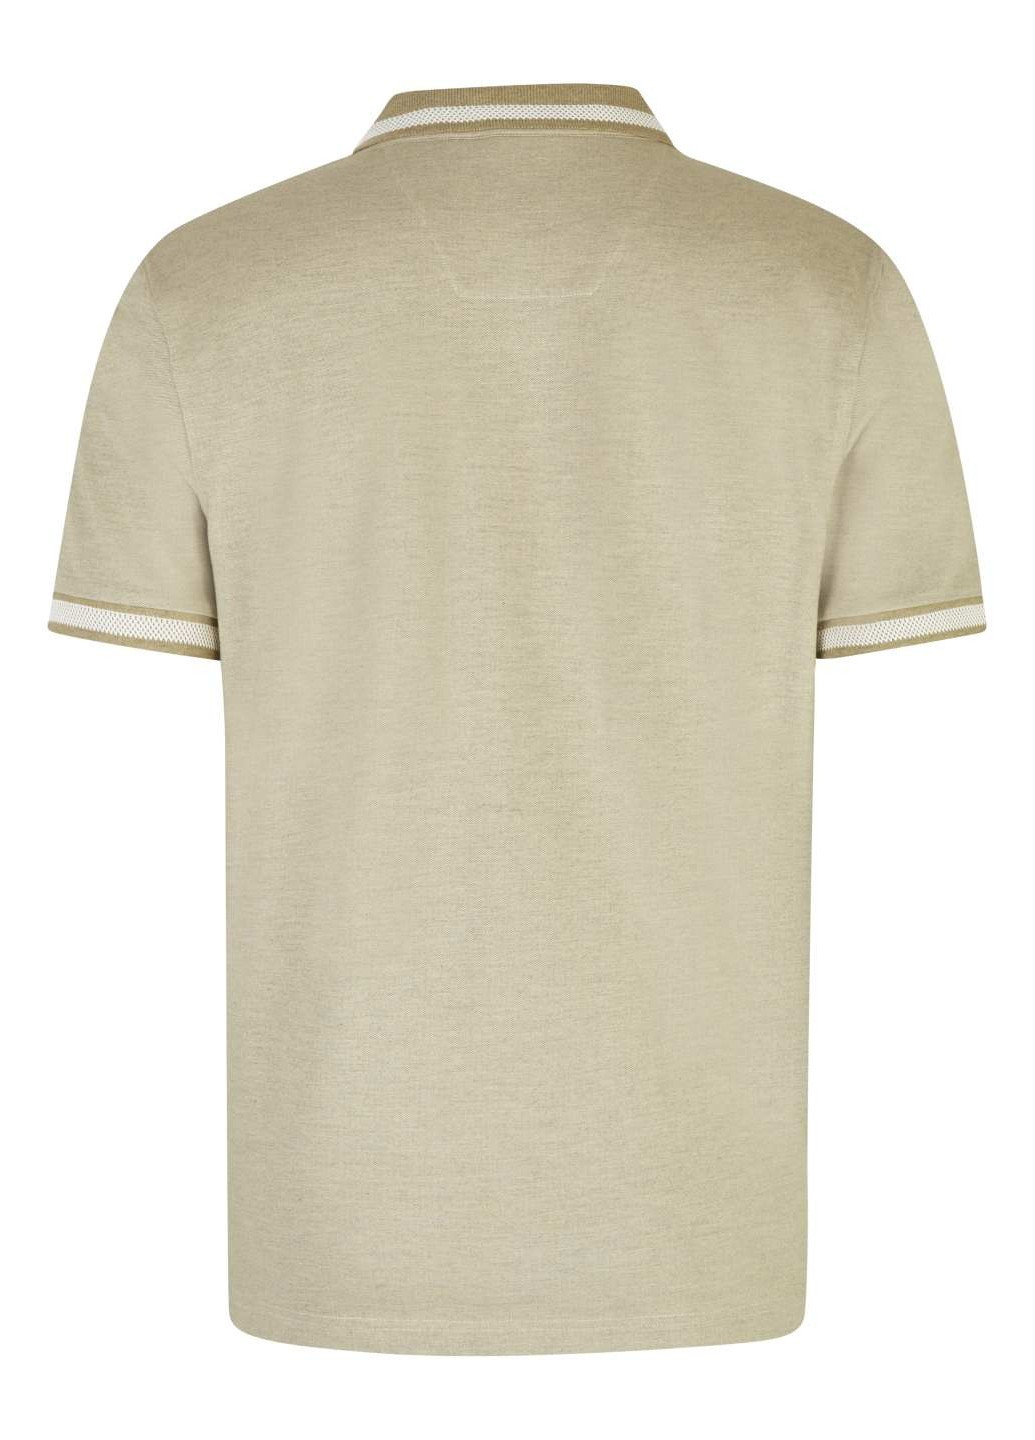 Оливковая футболка-мужское поло оливковый для мужчин Hechter однотонная